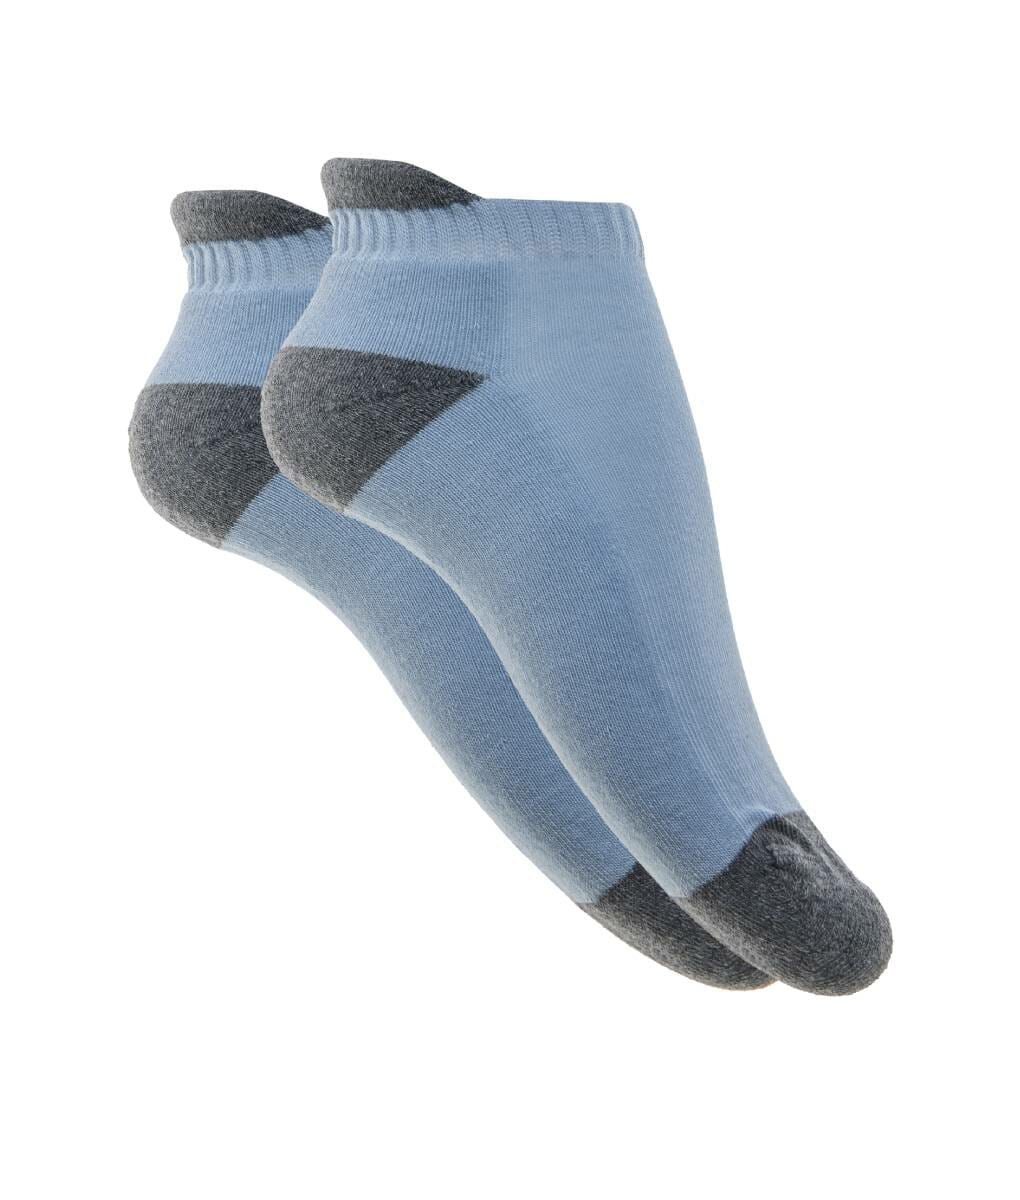 Γυναικεία κοφτή κάλτσα πετσετέ σιέλ - Per Mia Donna - 